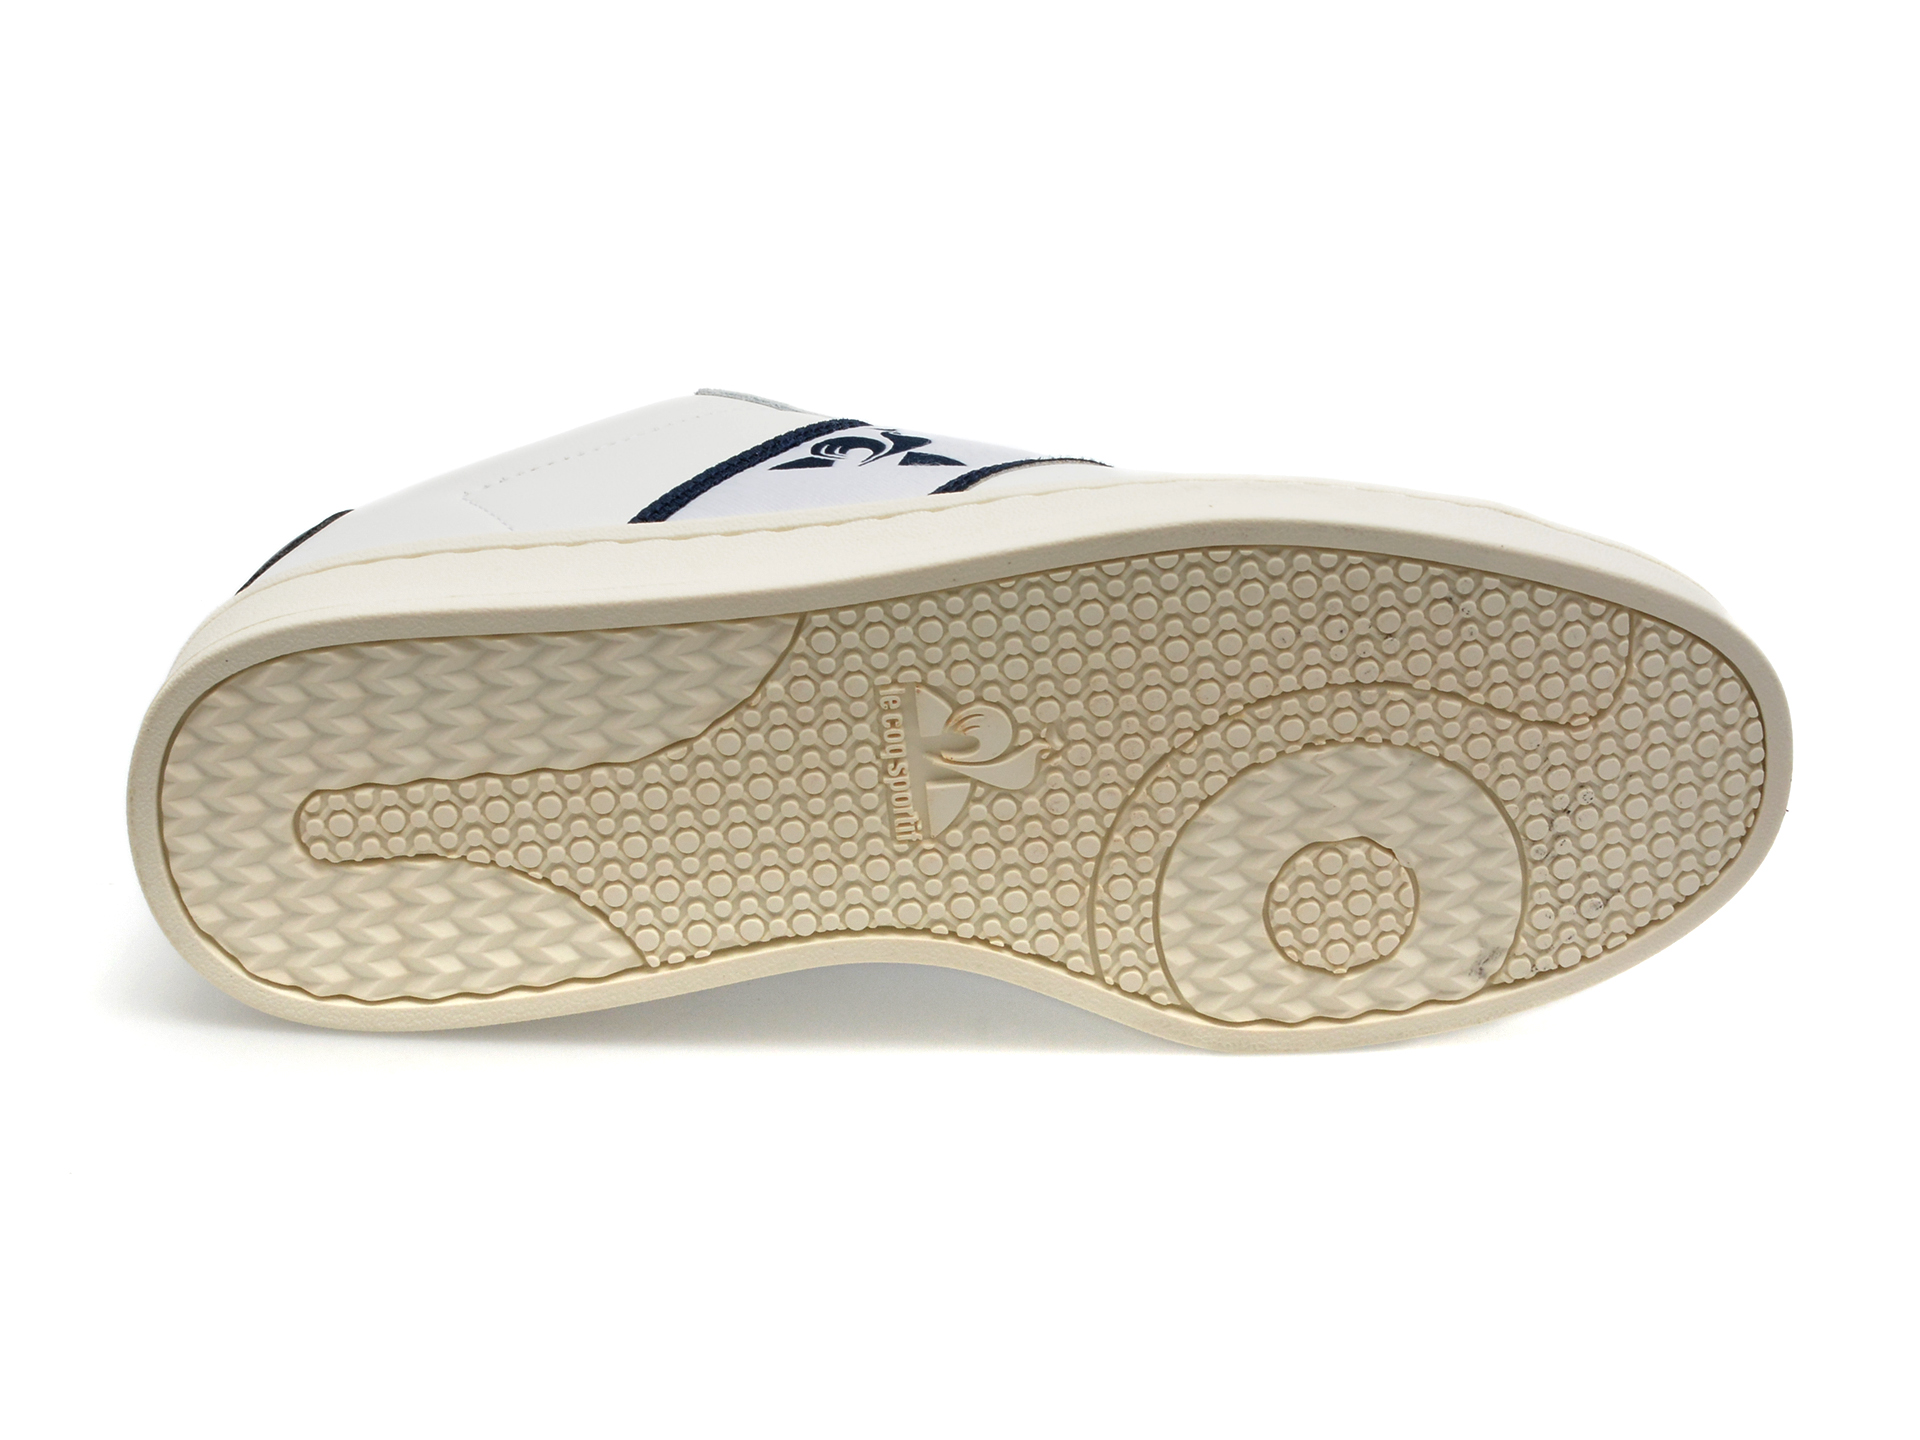 Pantofi LE COQ SPORTIF albi, 2310162, din piele naturala